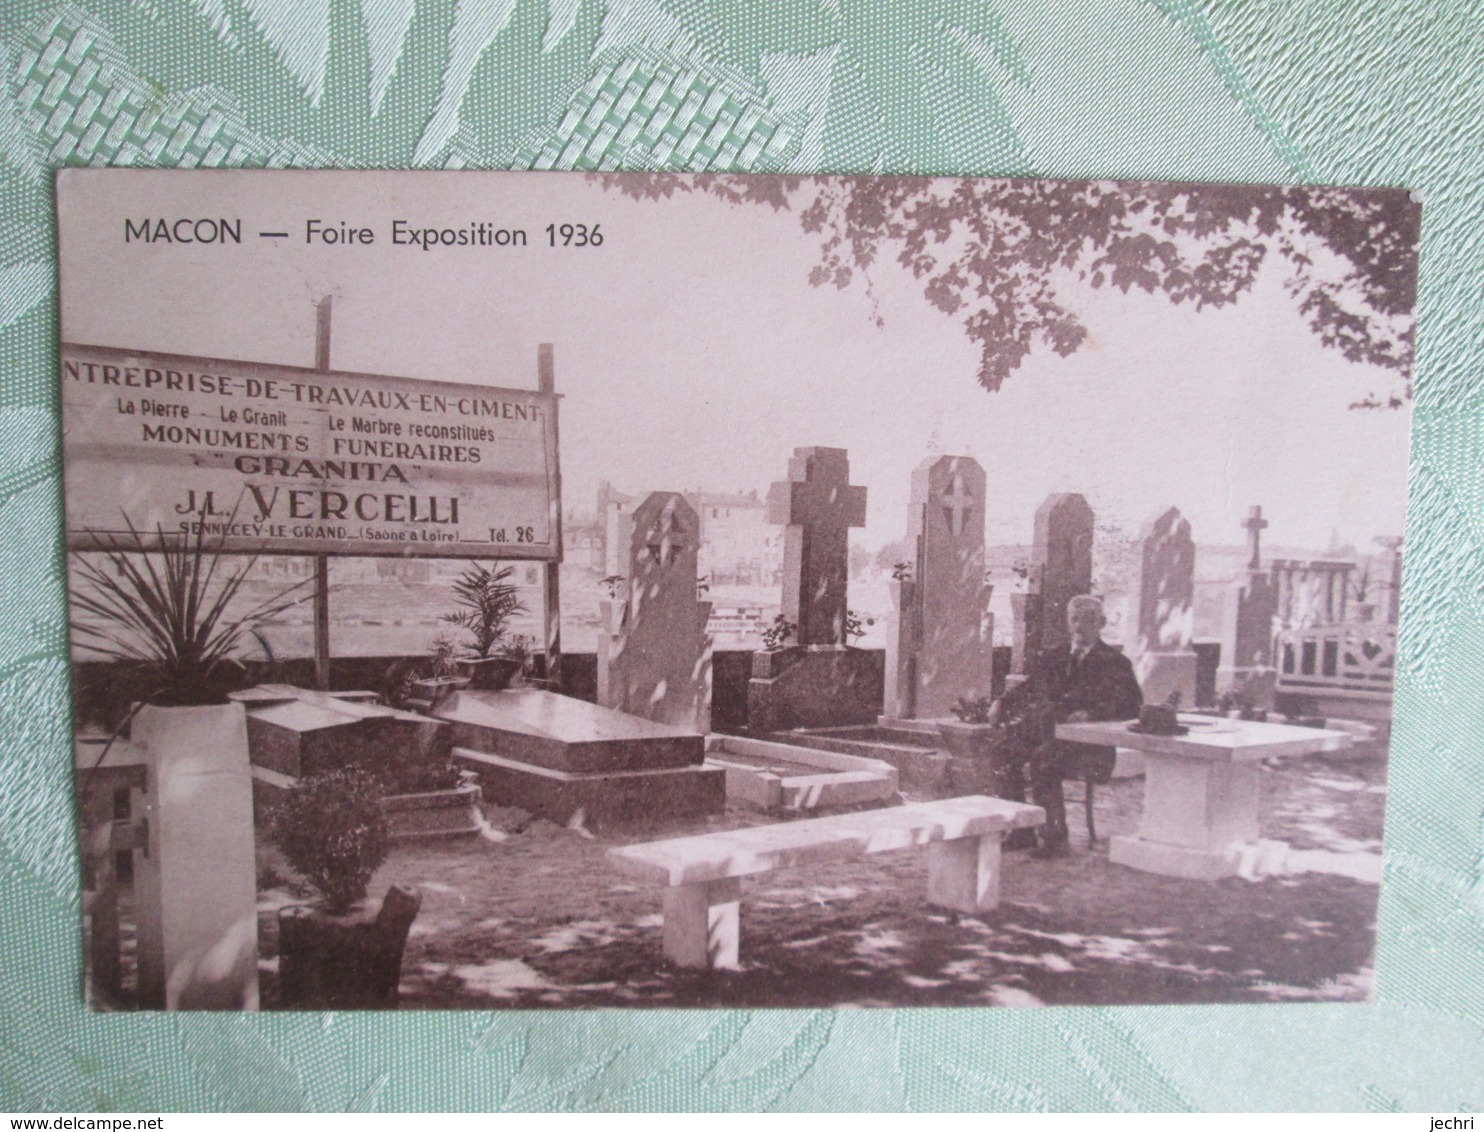 Macon . Foire Expo 1936 . Monuments Funeraires - Macon